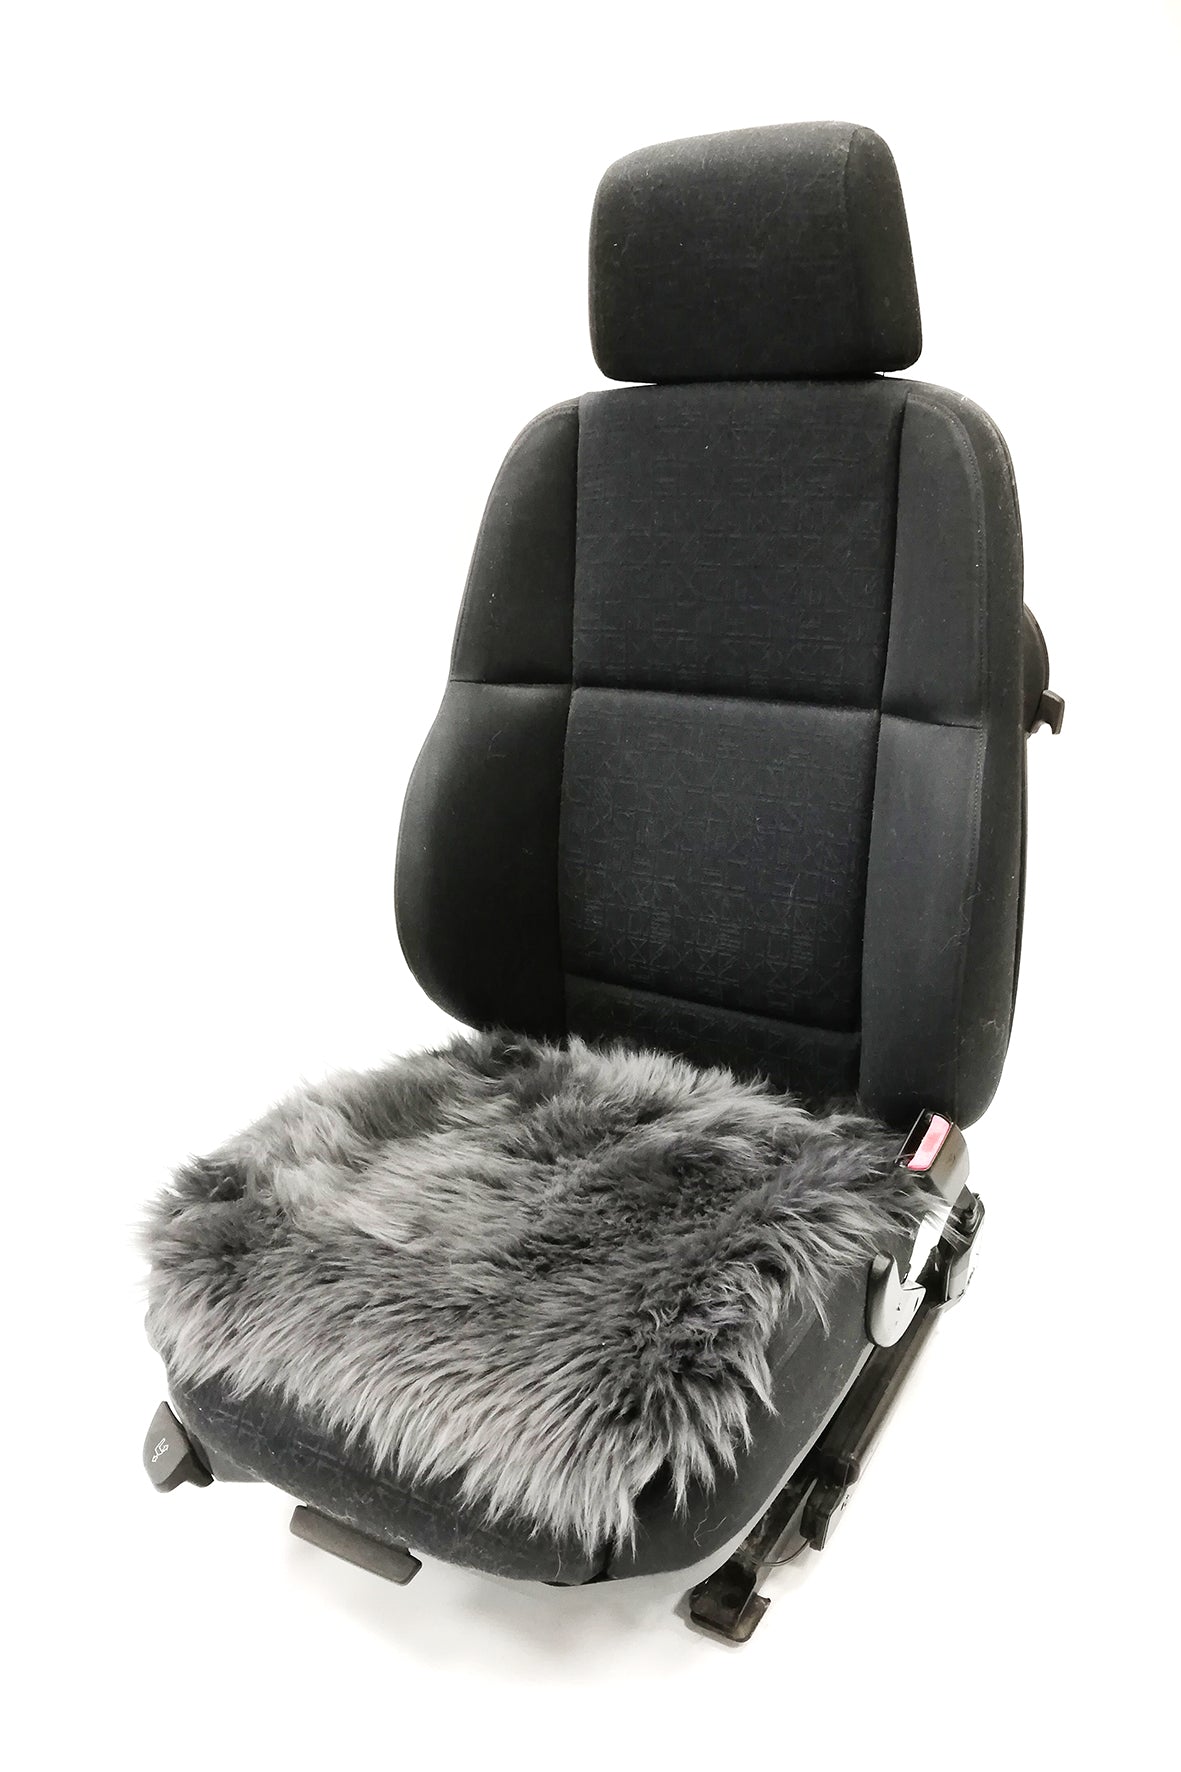 Lammfell-Kissen - Autositz-Kissen - Stuhlkissen - 40 cm - anthrazit, Lammfelle für Auto, Bett und Wohnzimmer in höchster Qualität